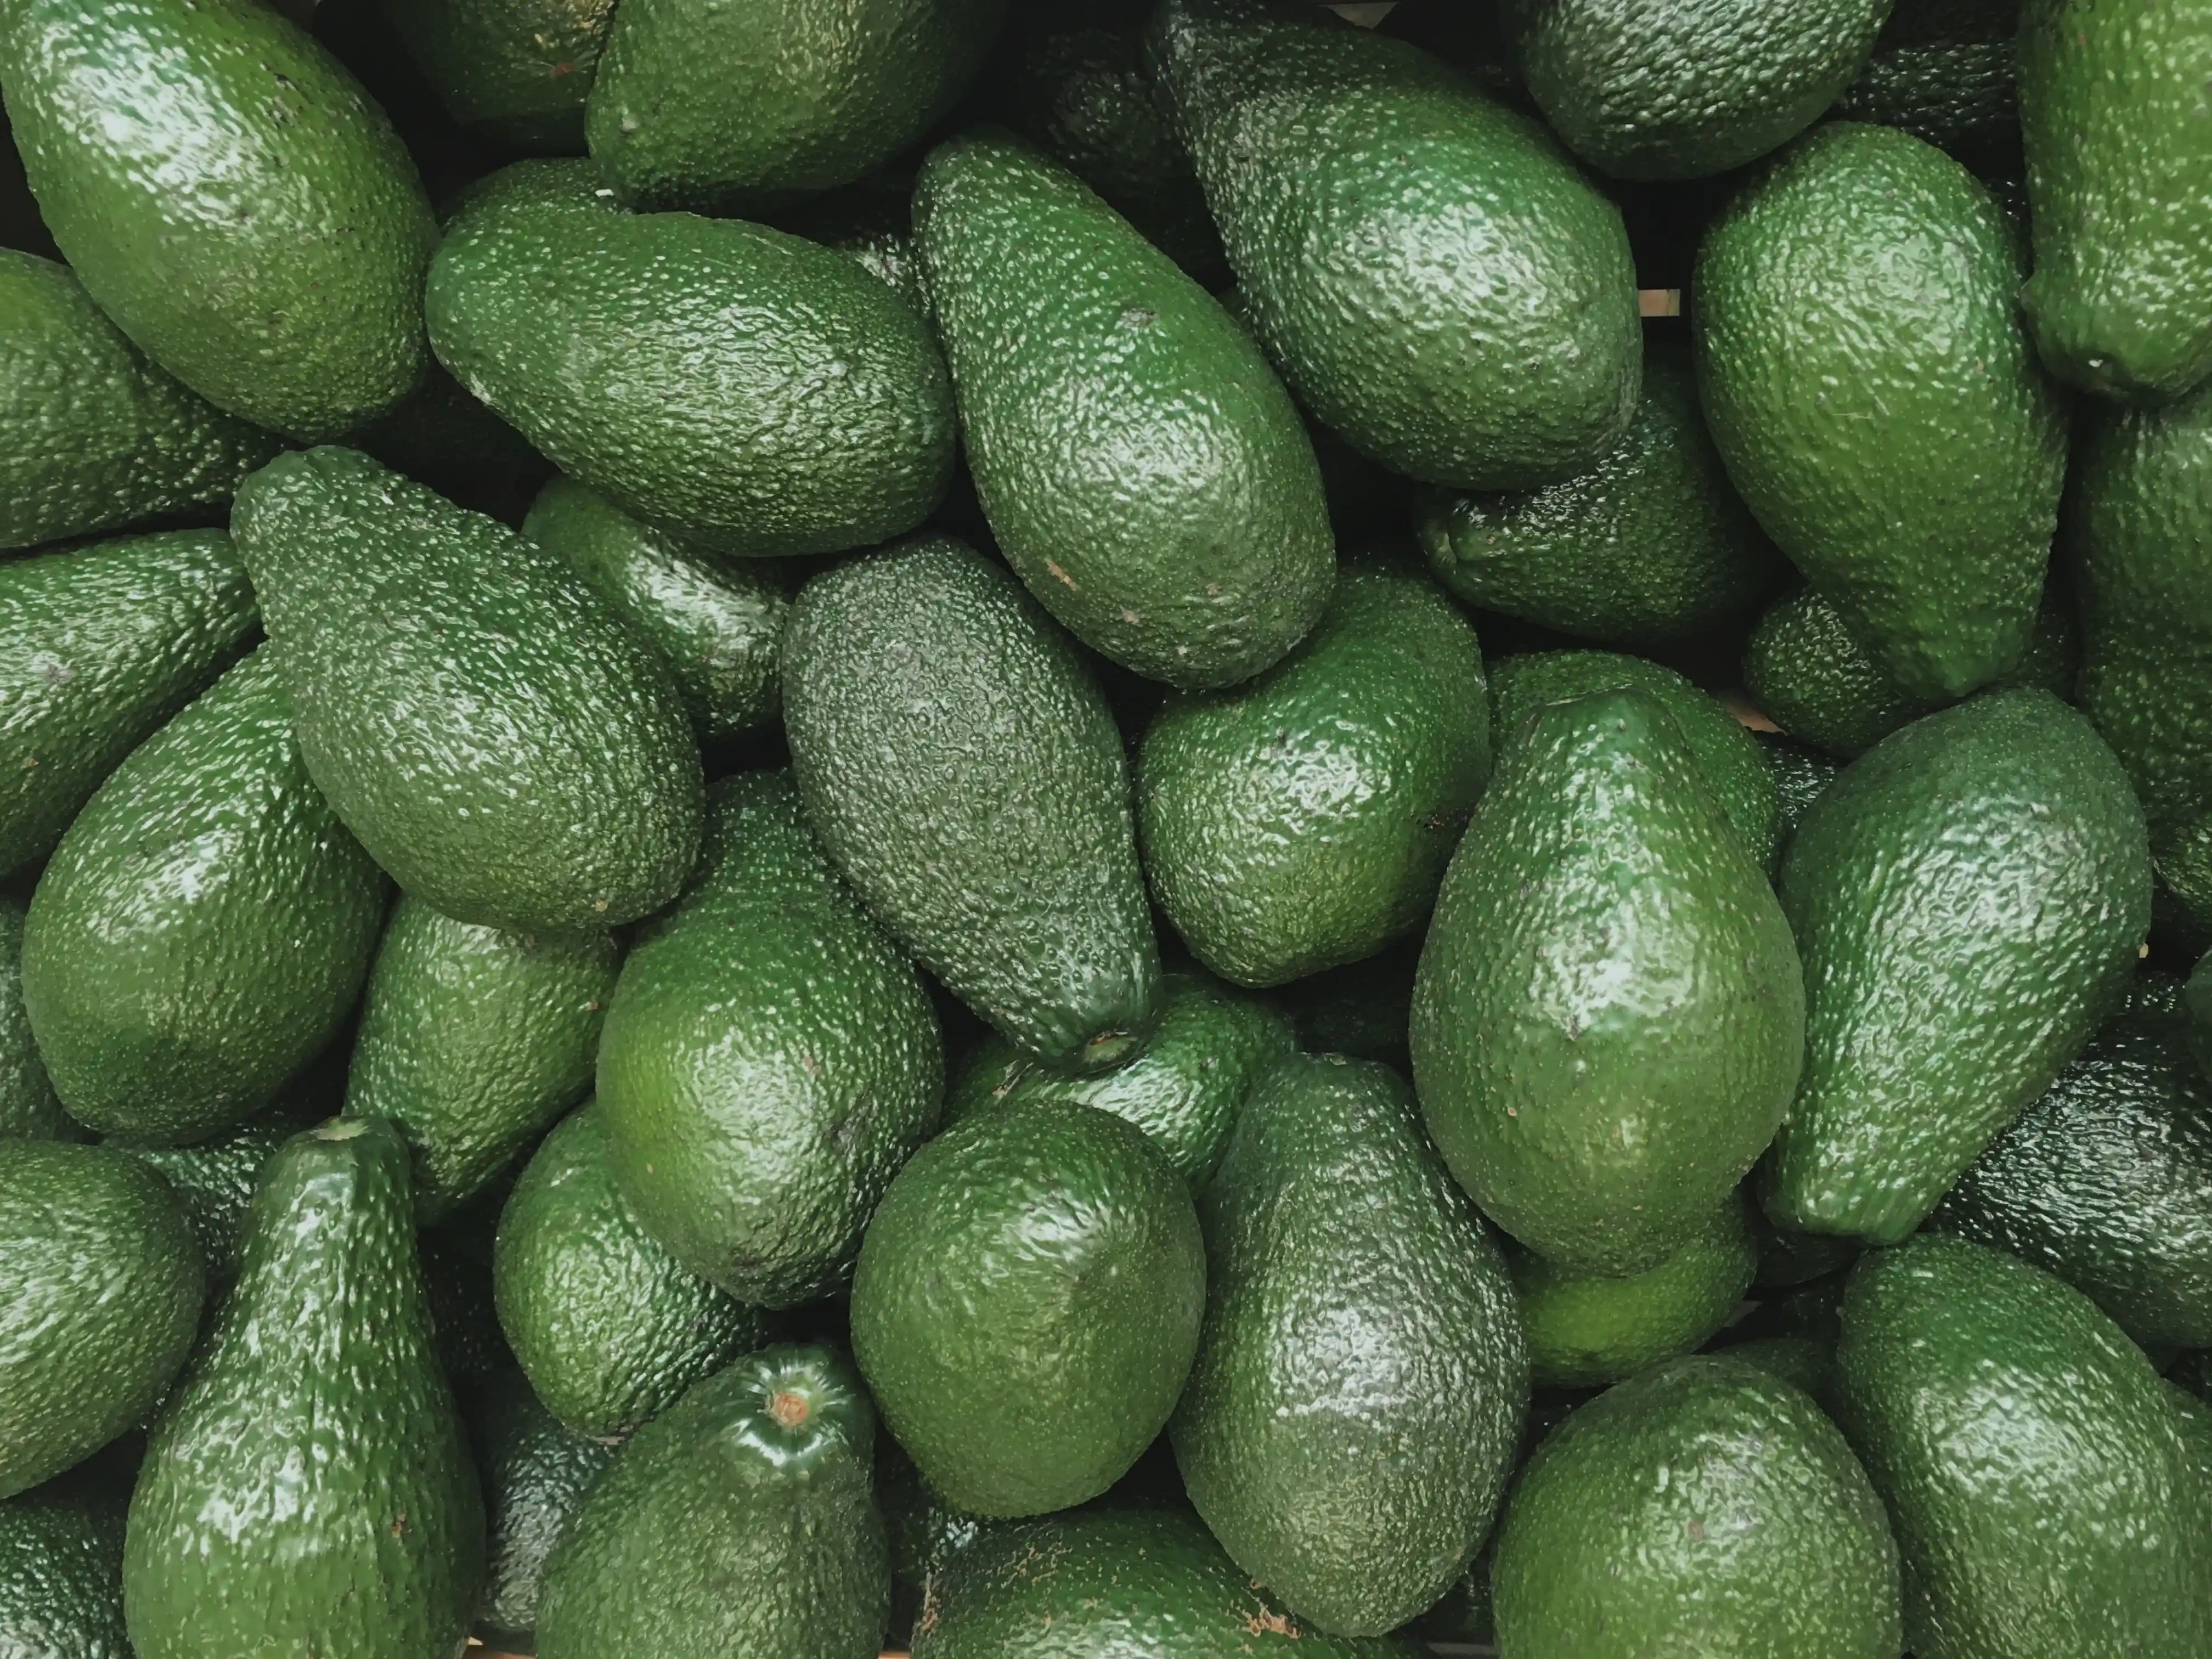 a pile of avocado